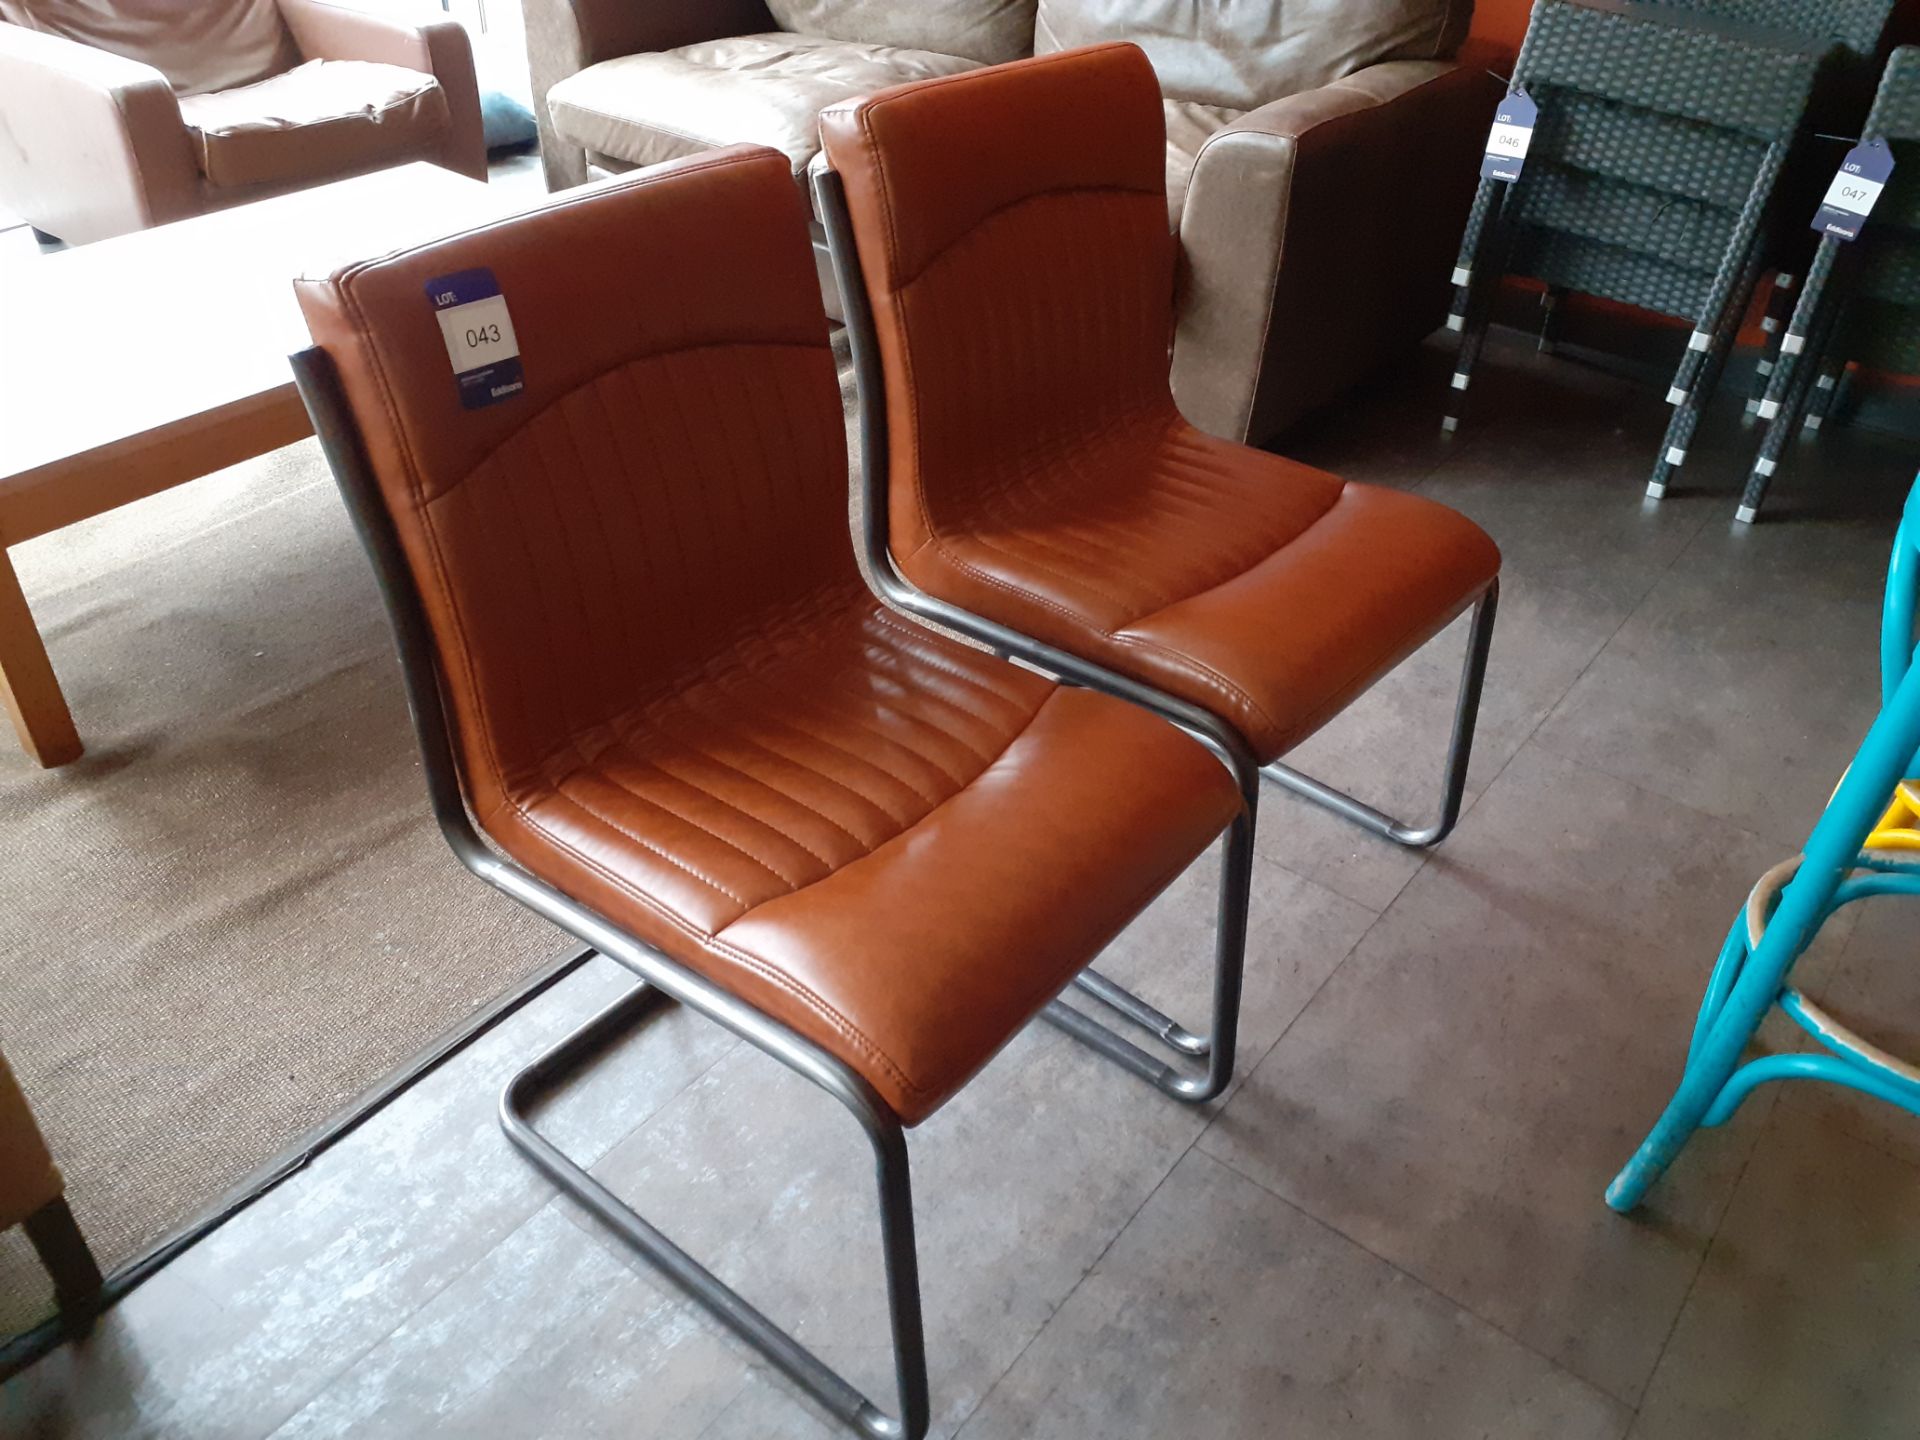 Pair of Nancy tubular steel chairs, brown vinyl